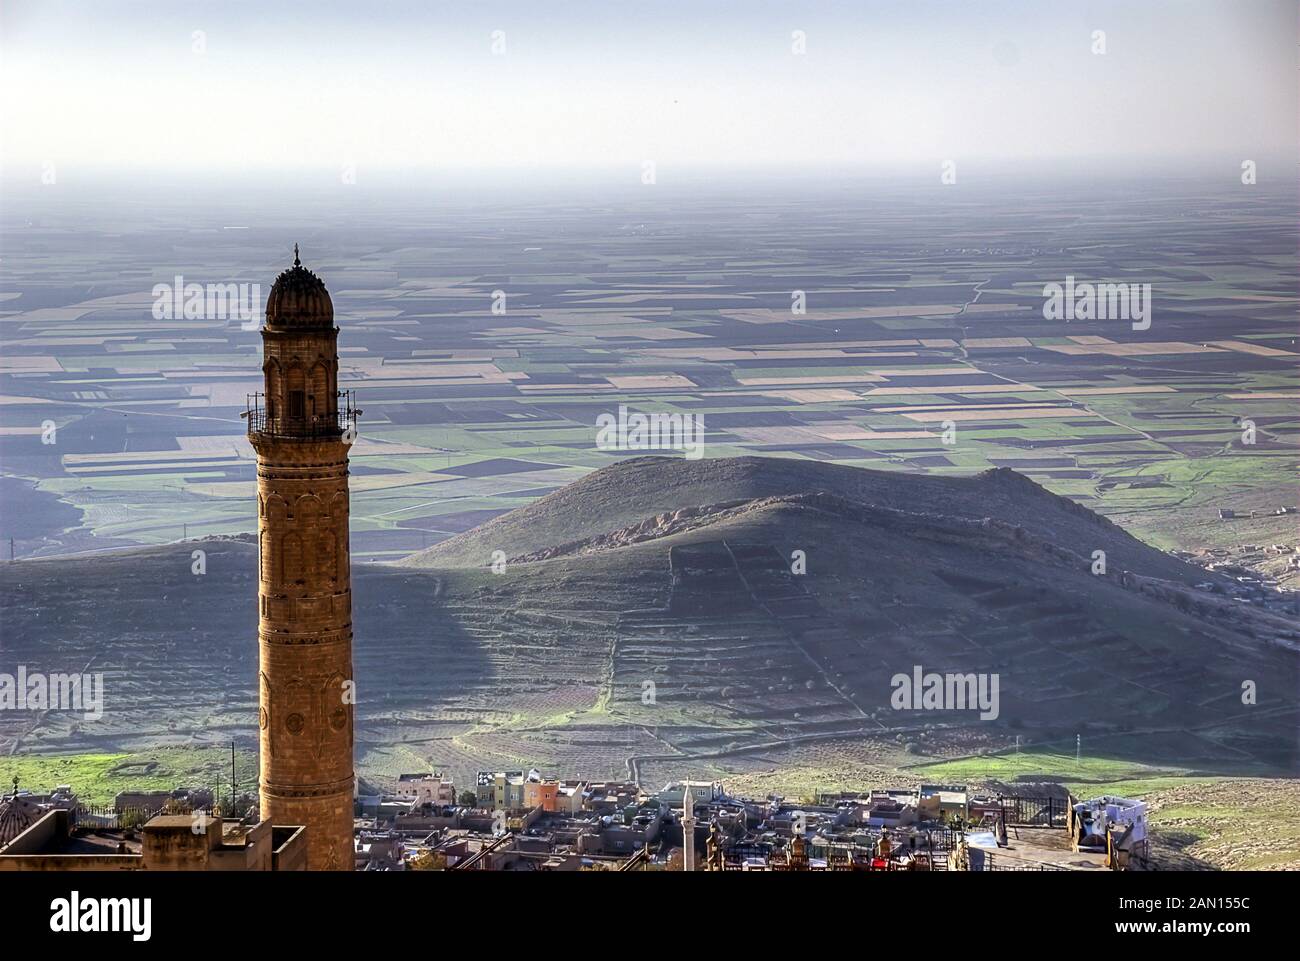 La famosa Moschea "Ulu Cami minareto.' Cupola di Zinciriye Medrese, Mardin, a sud est della Turchia Foto Stock